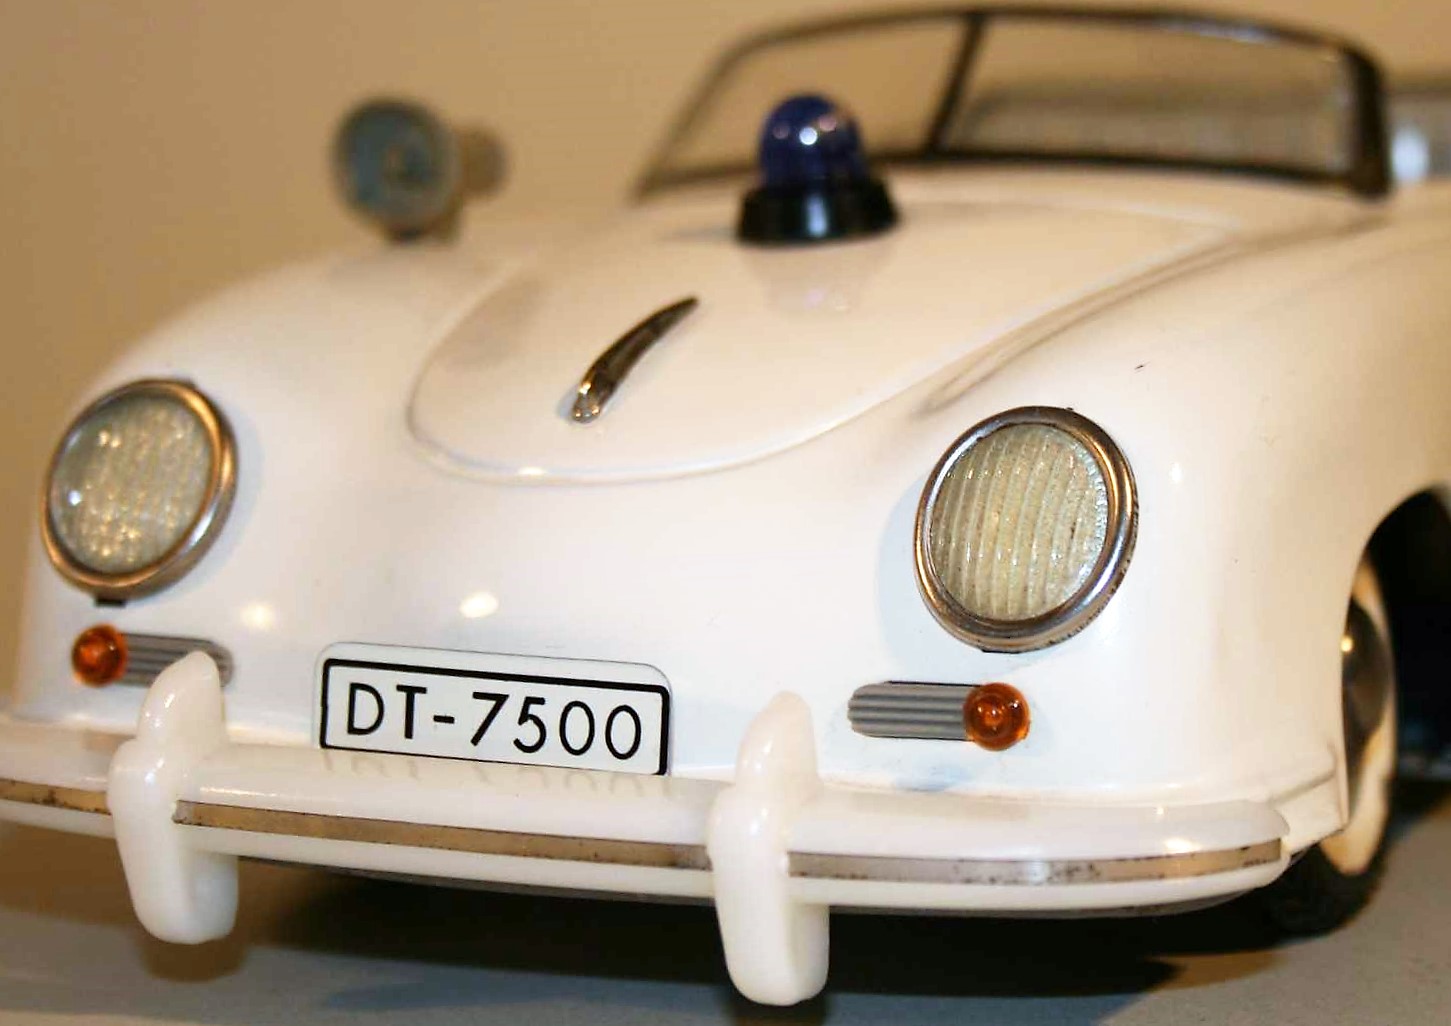 Nummernschild DT-7500 für Distler "Polizei" Porsche FS 7500 Electromatic 